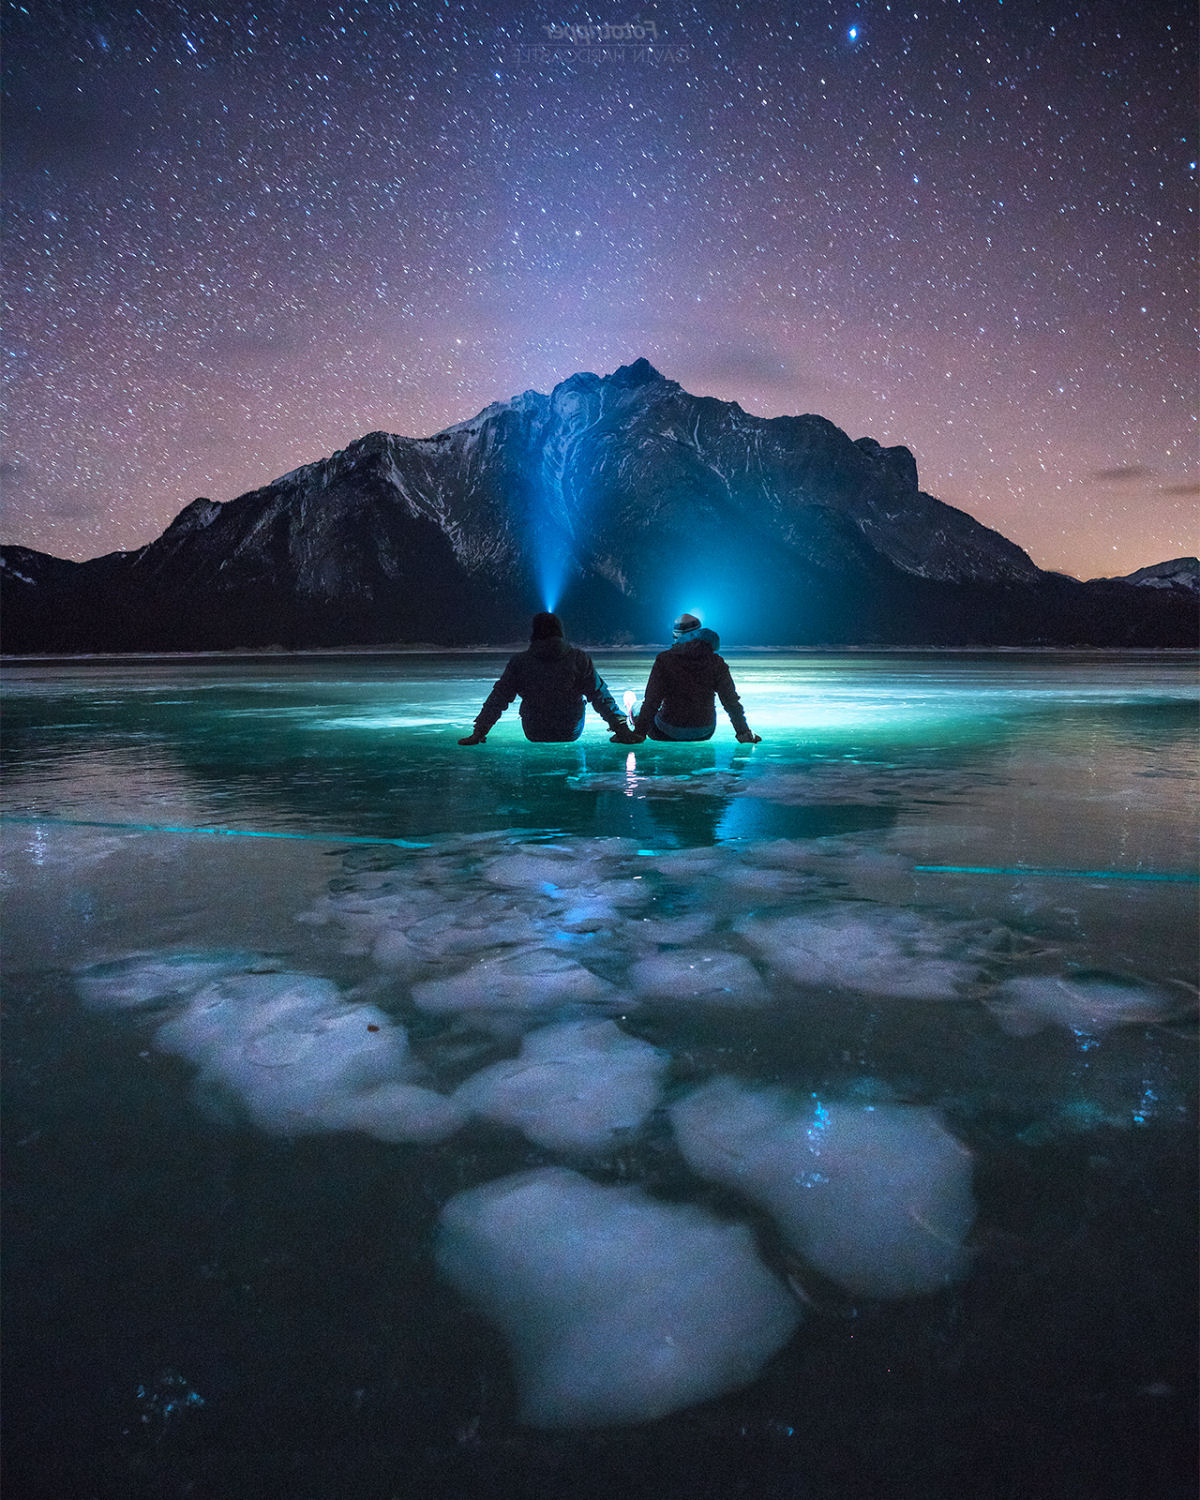 O belo lago de bolhas congeladas de metano, em Alberta, no Canadá 04